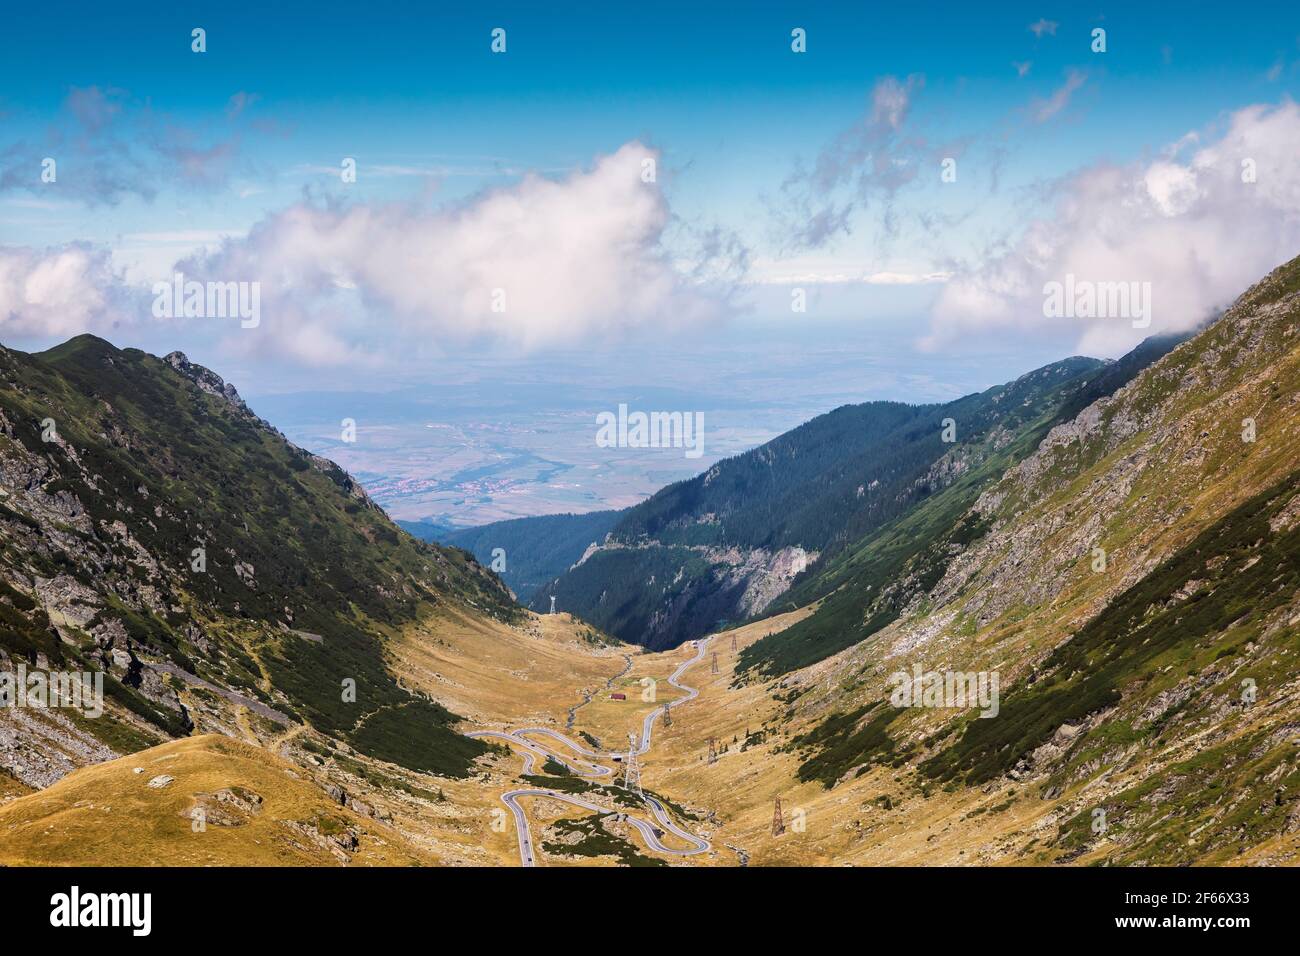 Vue fantastique sur les serpentins de la route de montagne Transfagaras, Roumanie. L'une des routes les plus sinueuses du monde. Destination touristique populaire dans la Fagar Banque D'Images